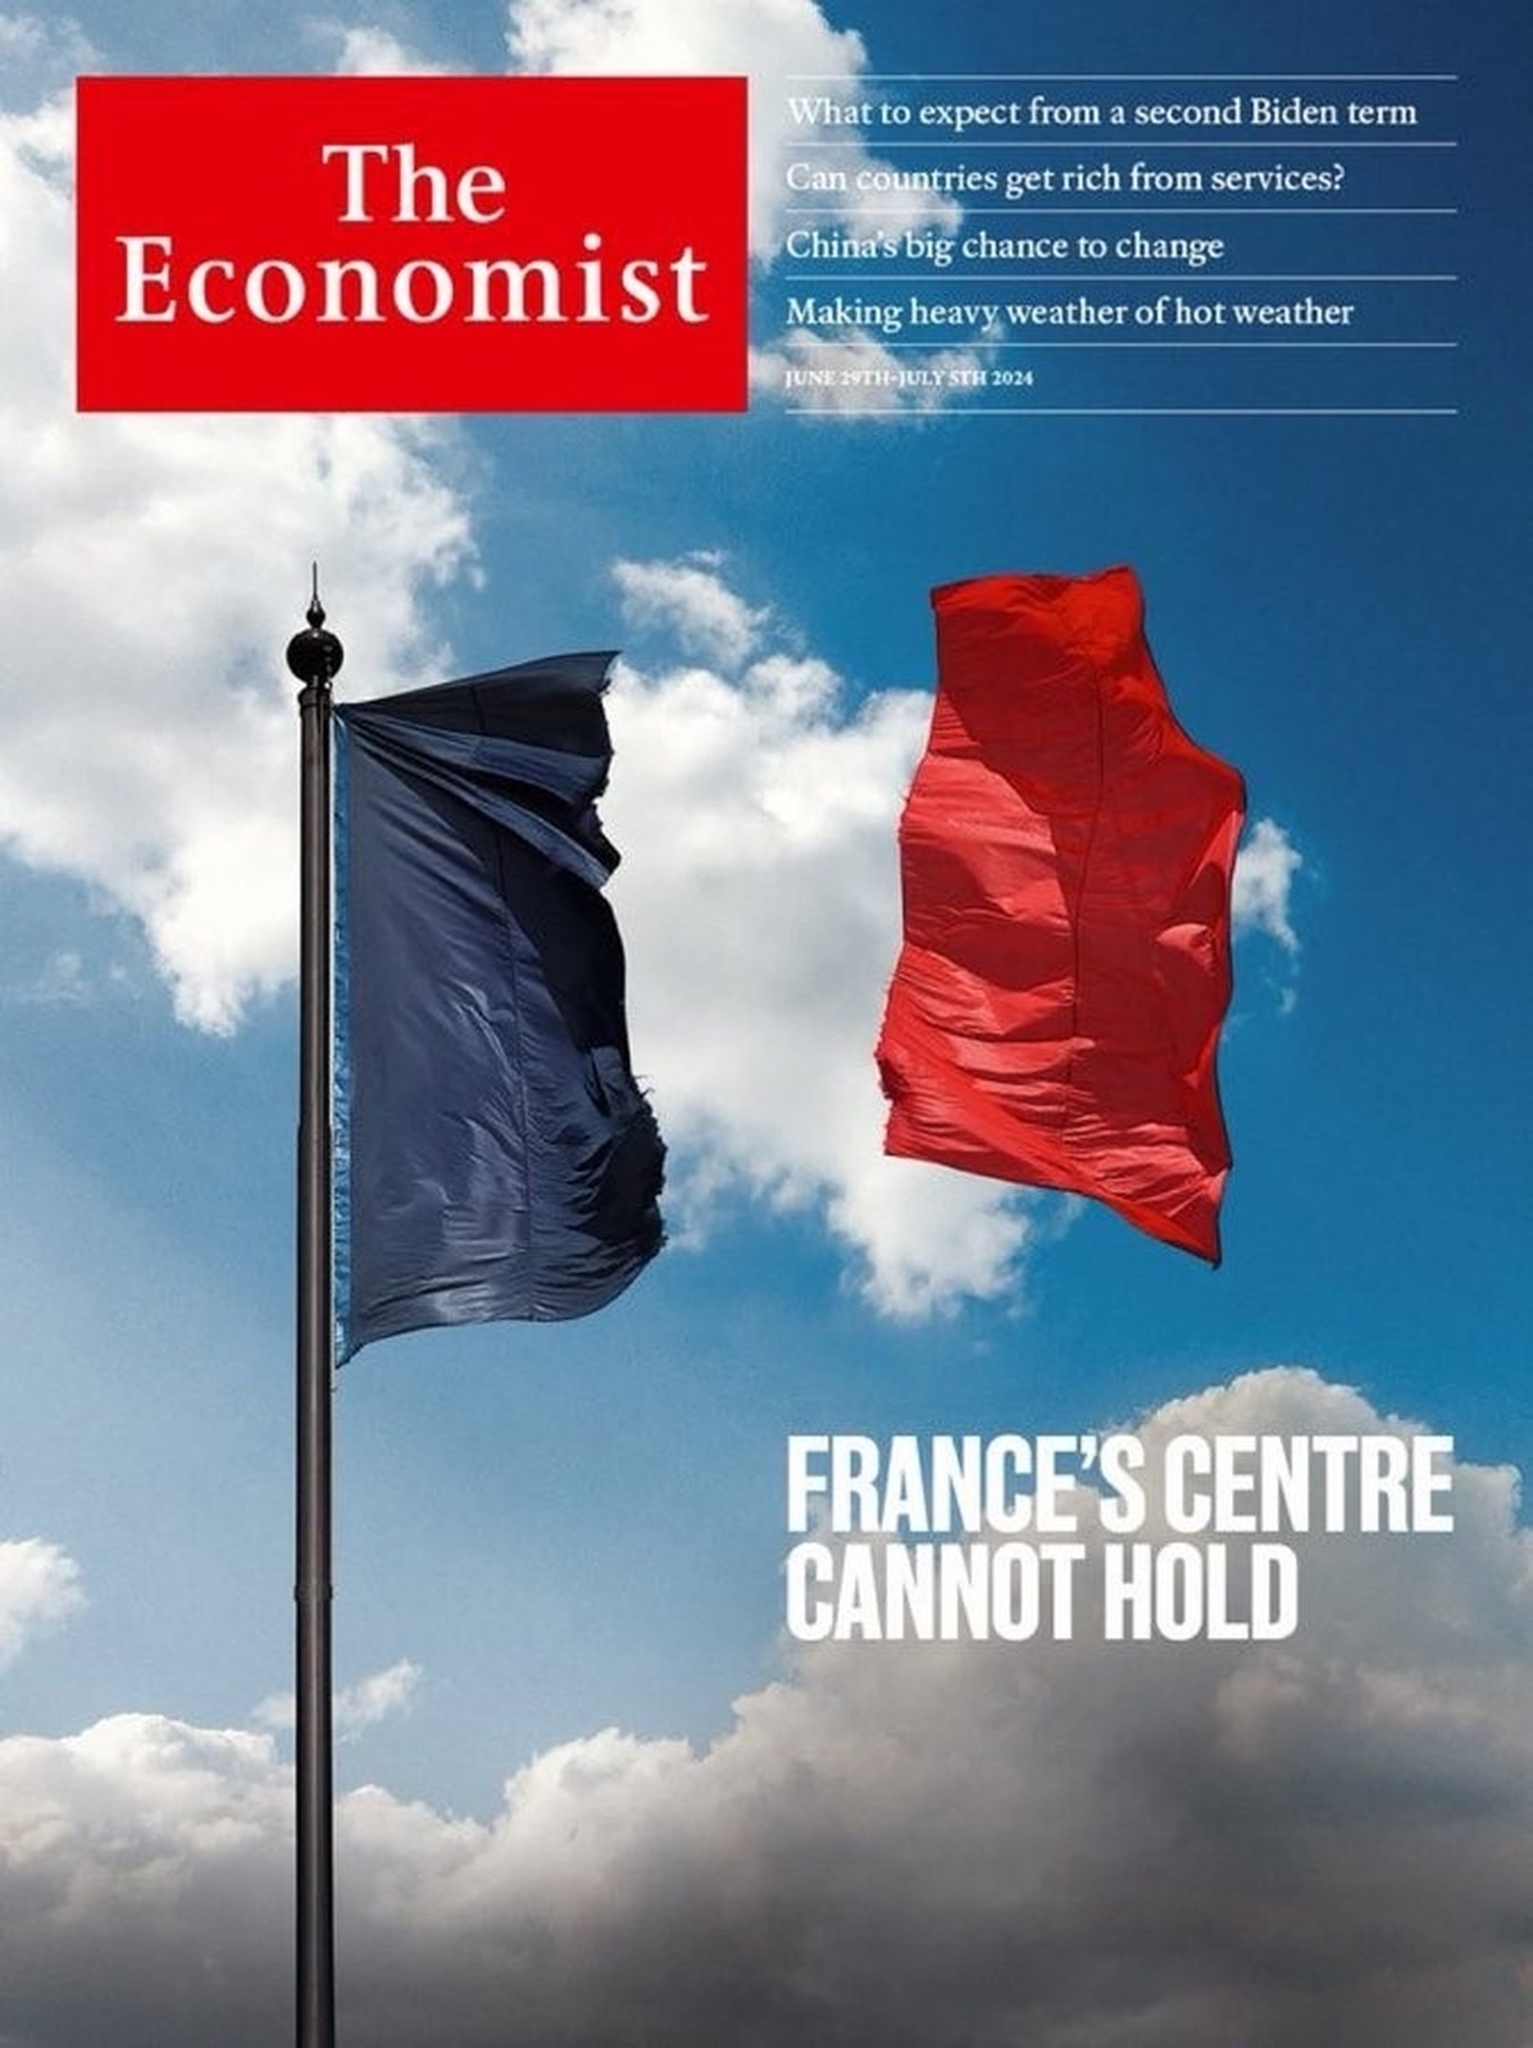 Εκλογές στη Γαλλία: Πού πήγε το κέντρο; Το εξώφυλλο του Economist απεικονίζει την ταπεινωτική ήττα του Μακρόν που έρχεται